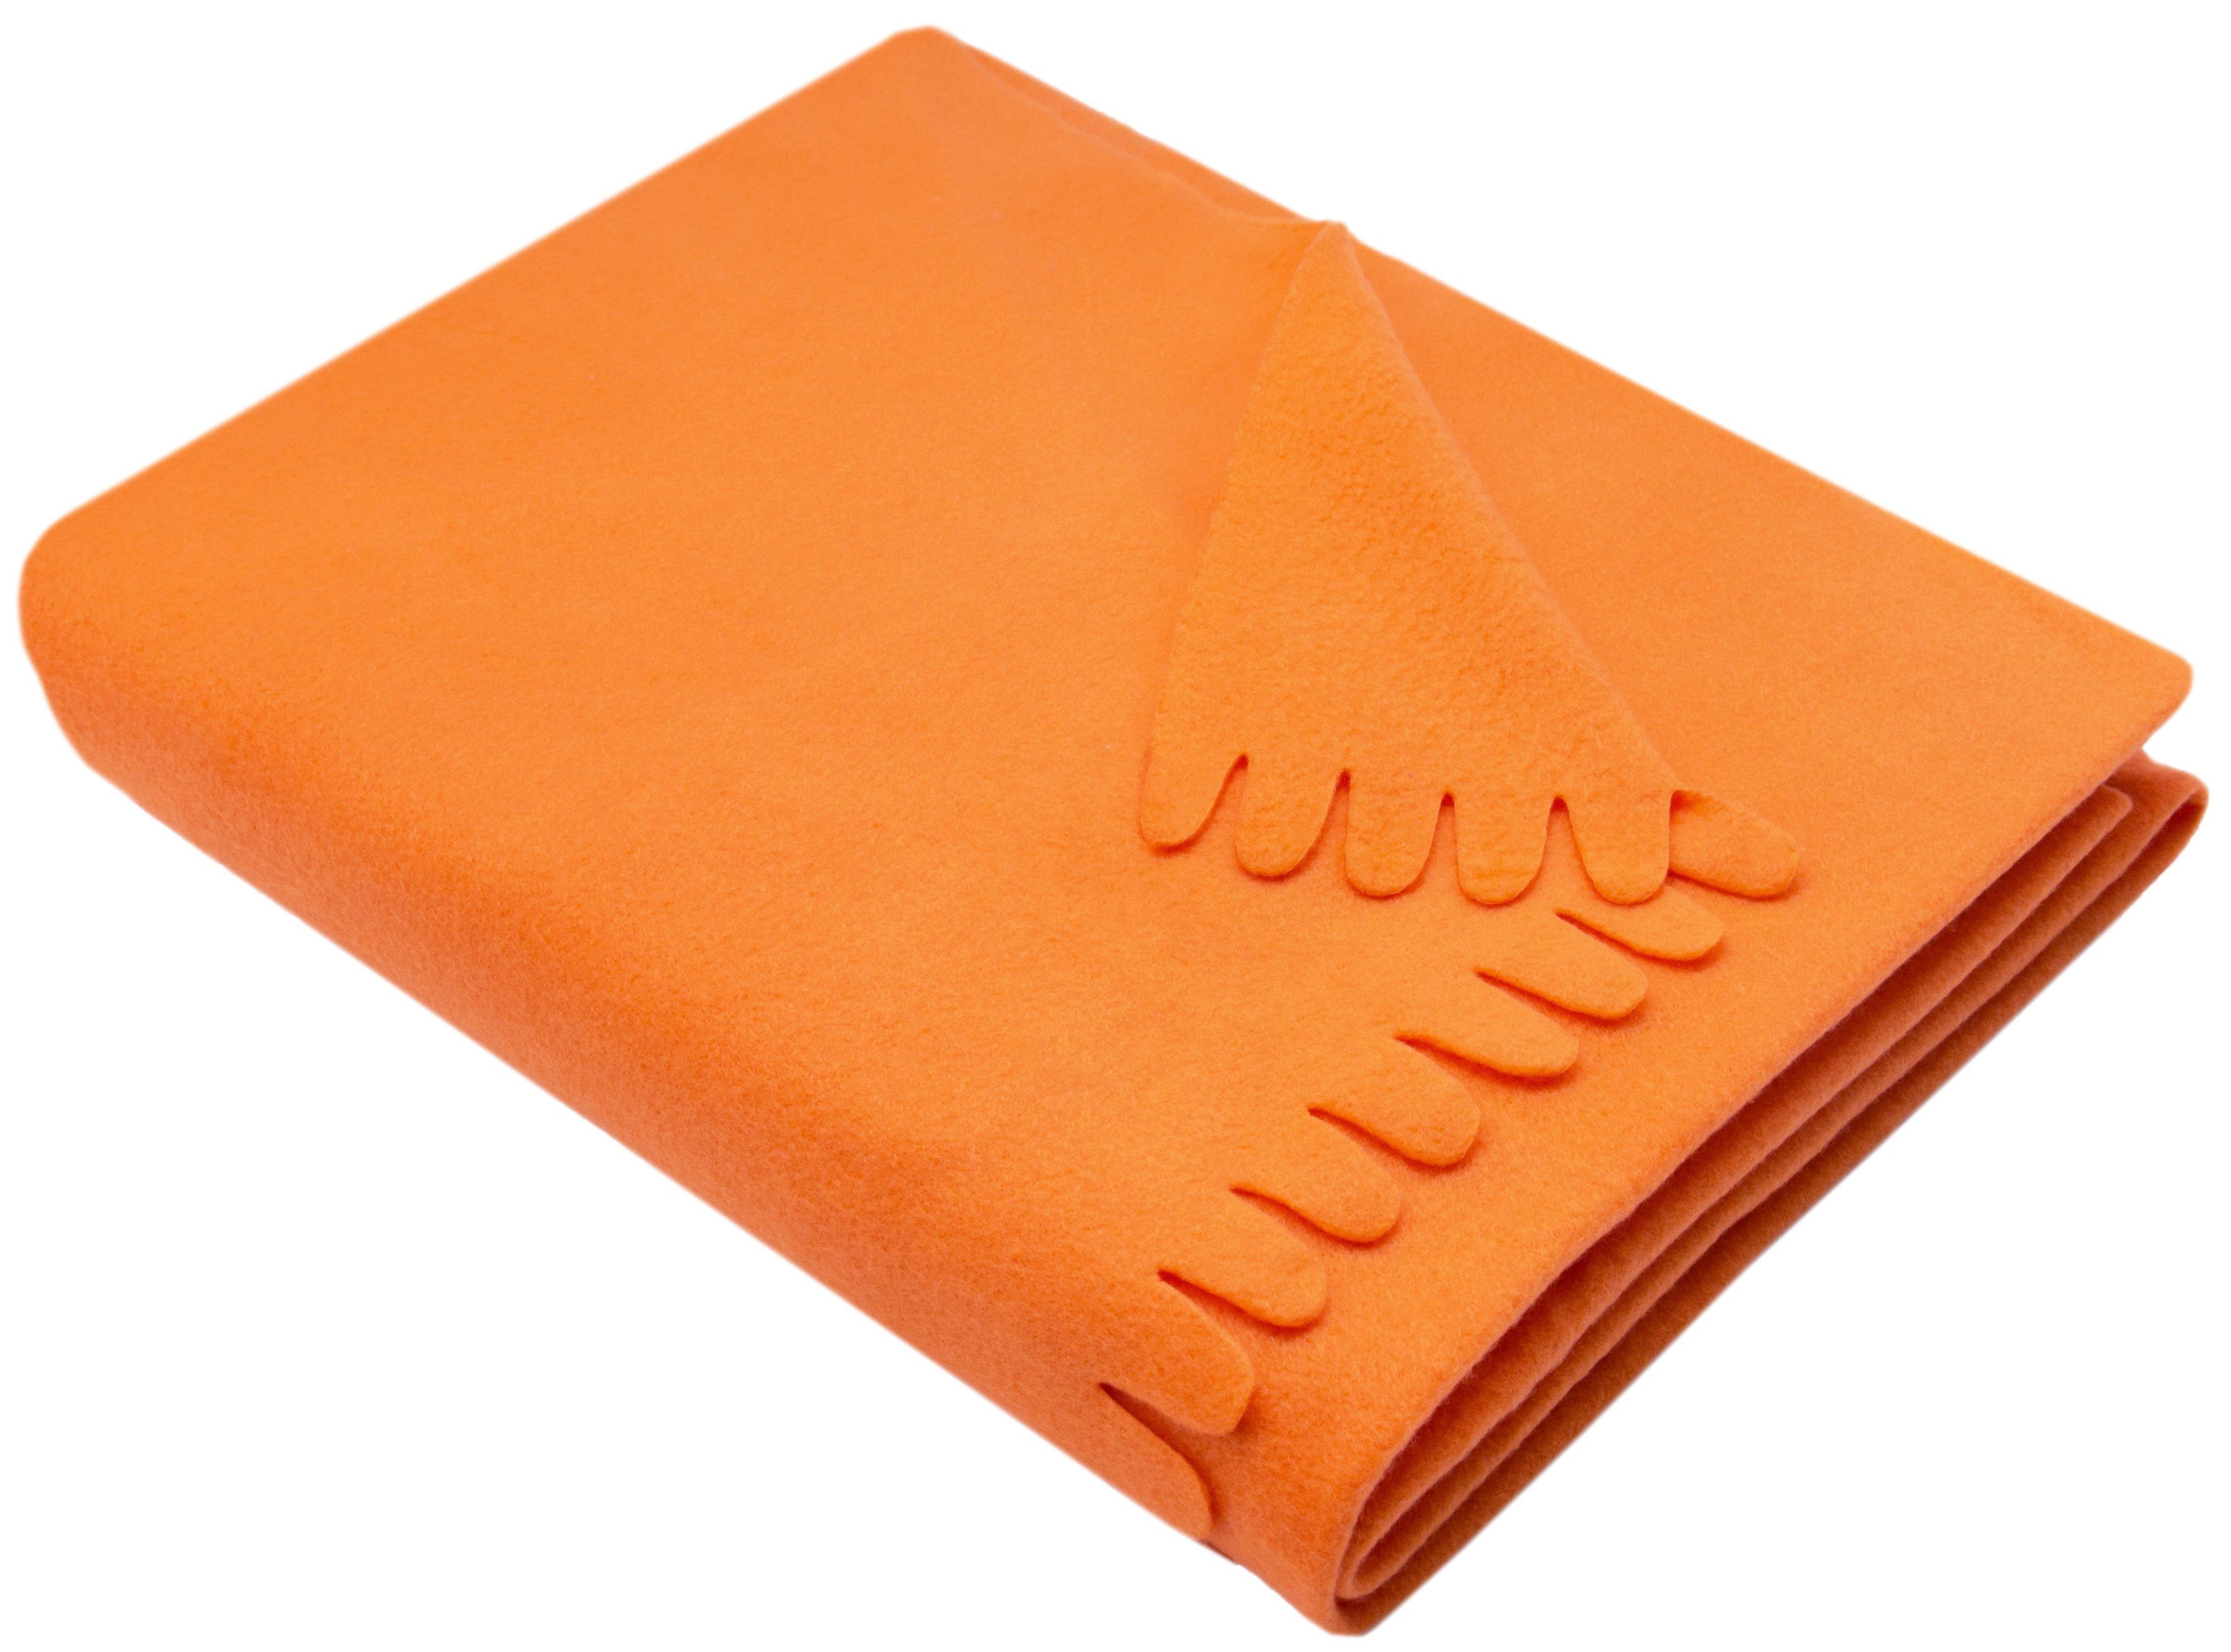 Wohndecke, ZOLLNER, stylische Wellenkante, in vielen Farben verfügbar, 130 x 170 cm, 100% Polyester, In vielen Farben verfügbar orange